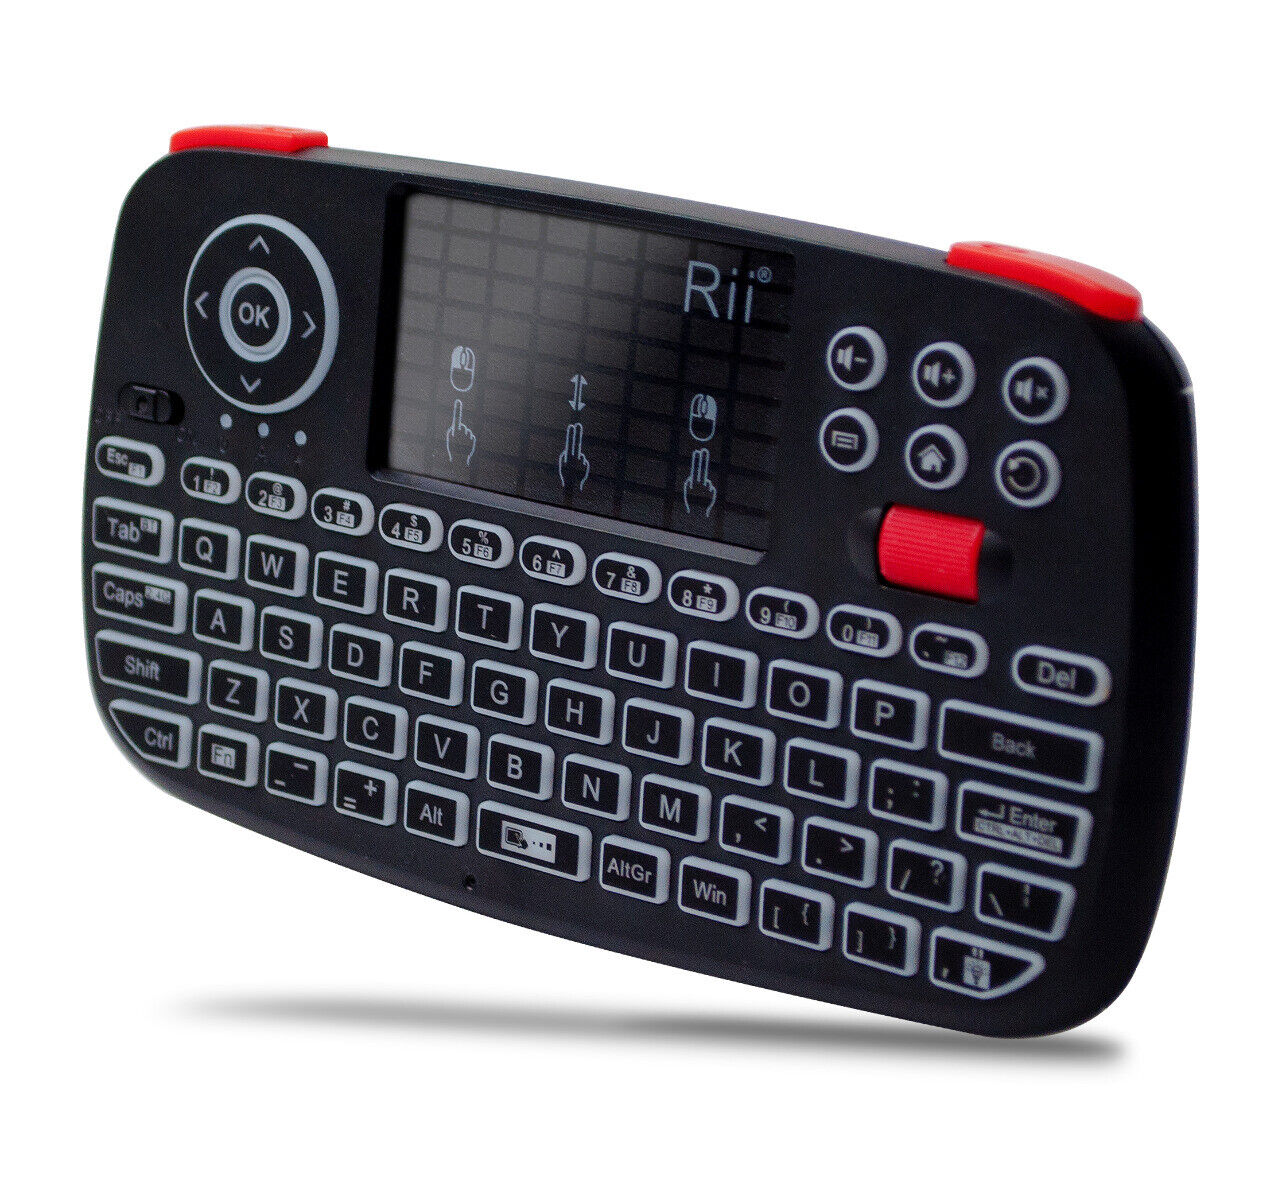  Rii i4 (Bluetooth + 2.4GHz) Blacklit Portable Mini Keyboard with Scroll wheel